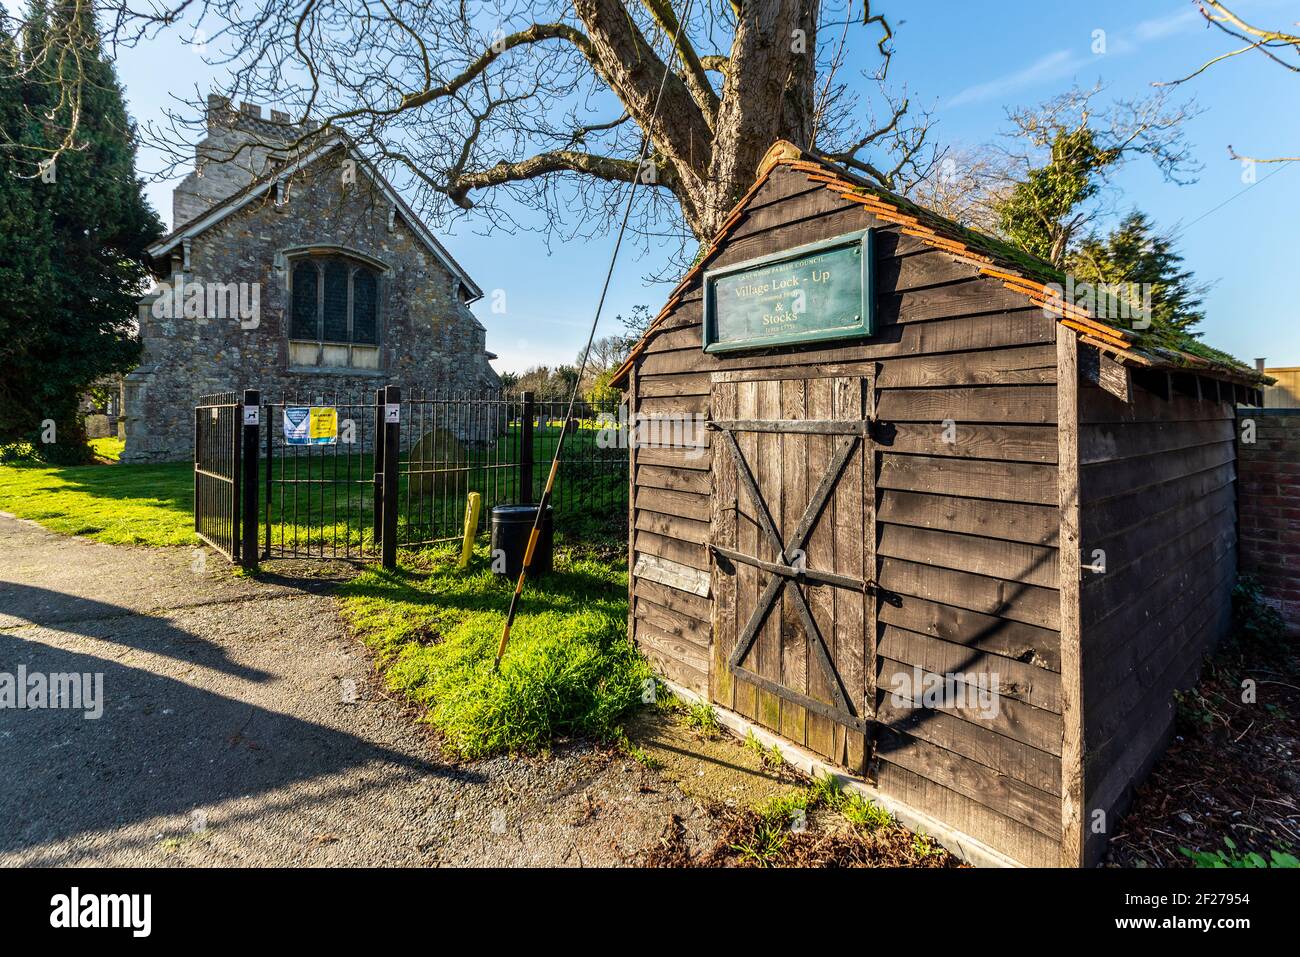 Holzschloss und Lager Gebäude von der Kirche St. Nicholas Pfarrkirche in Canewdon, Essex, Großbritannien. Frühe vorübergehende Inhaftierung Gefängnis für Kriminelle Stockfoto